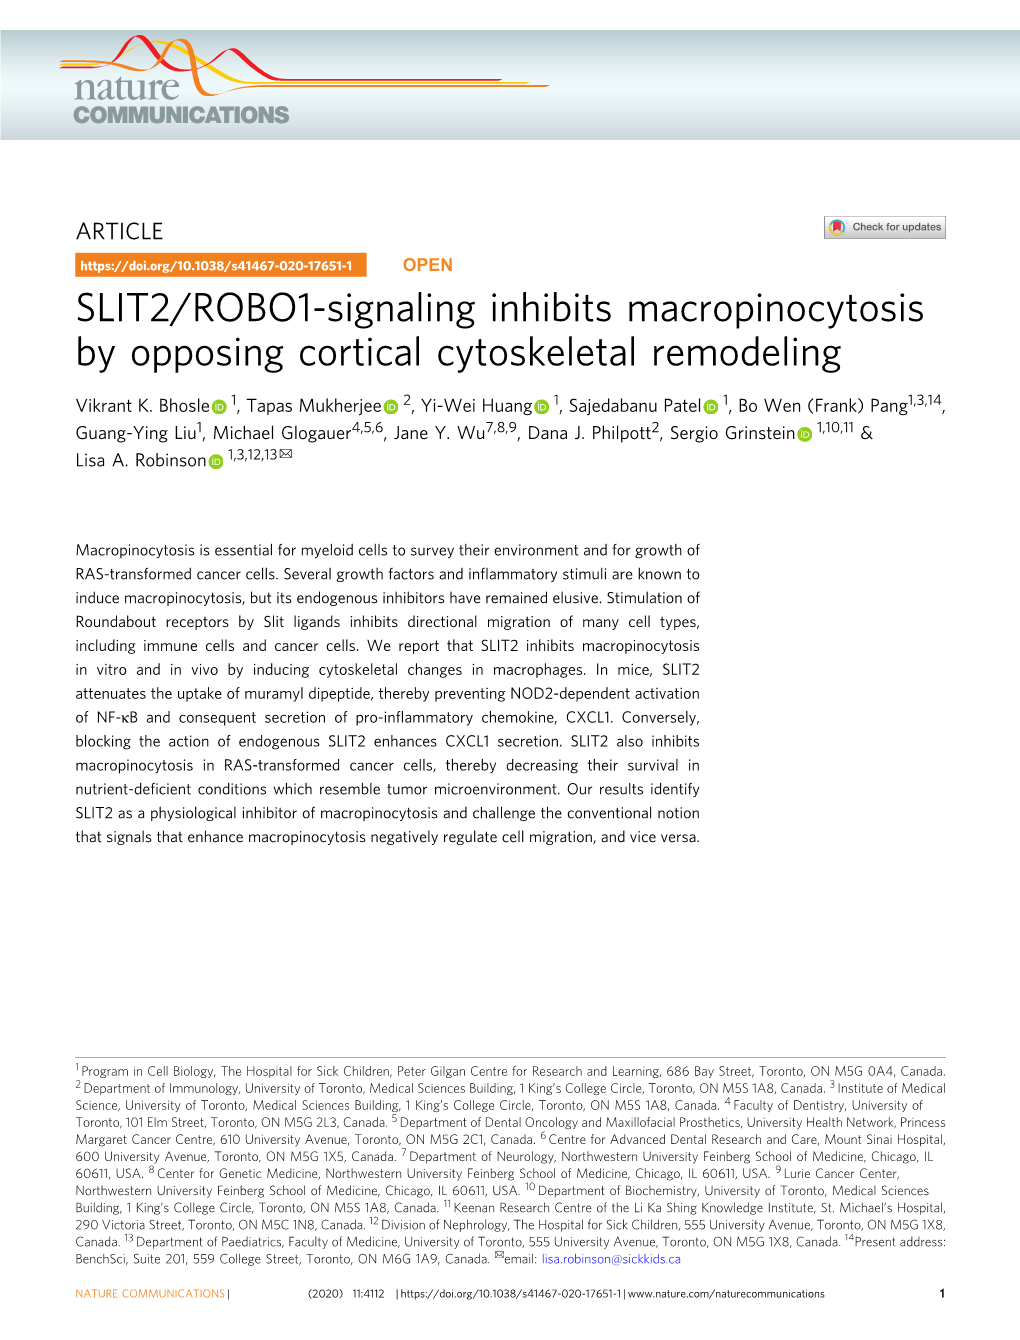 SLIT2/ROBO1-Signaling Inhibits Macropinocytosis by Opposing Cortical Cytoskeletal Remodeling